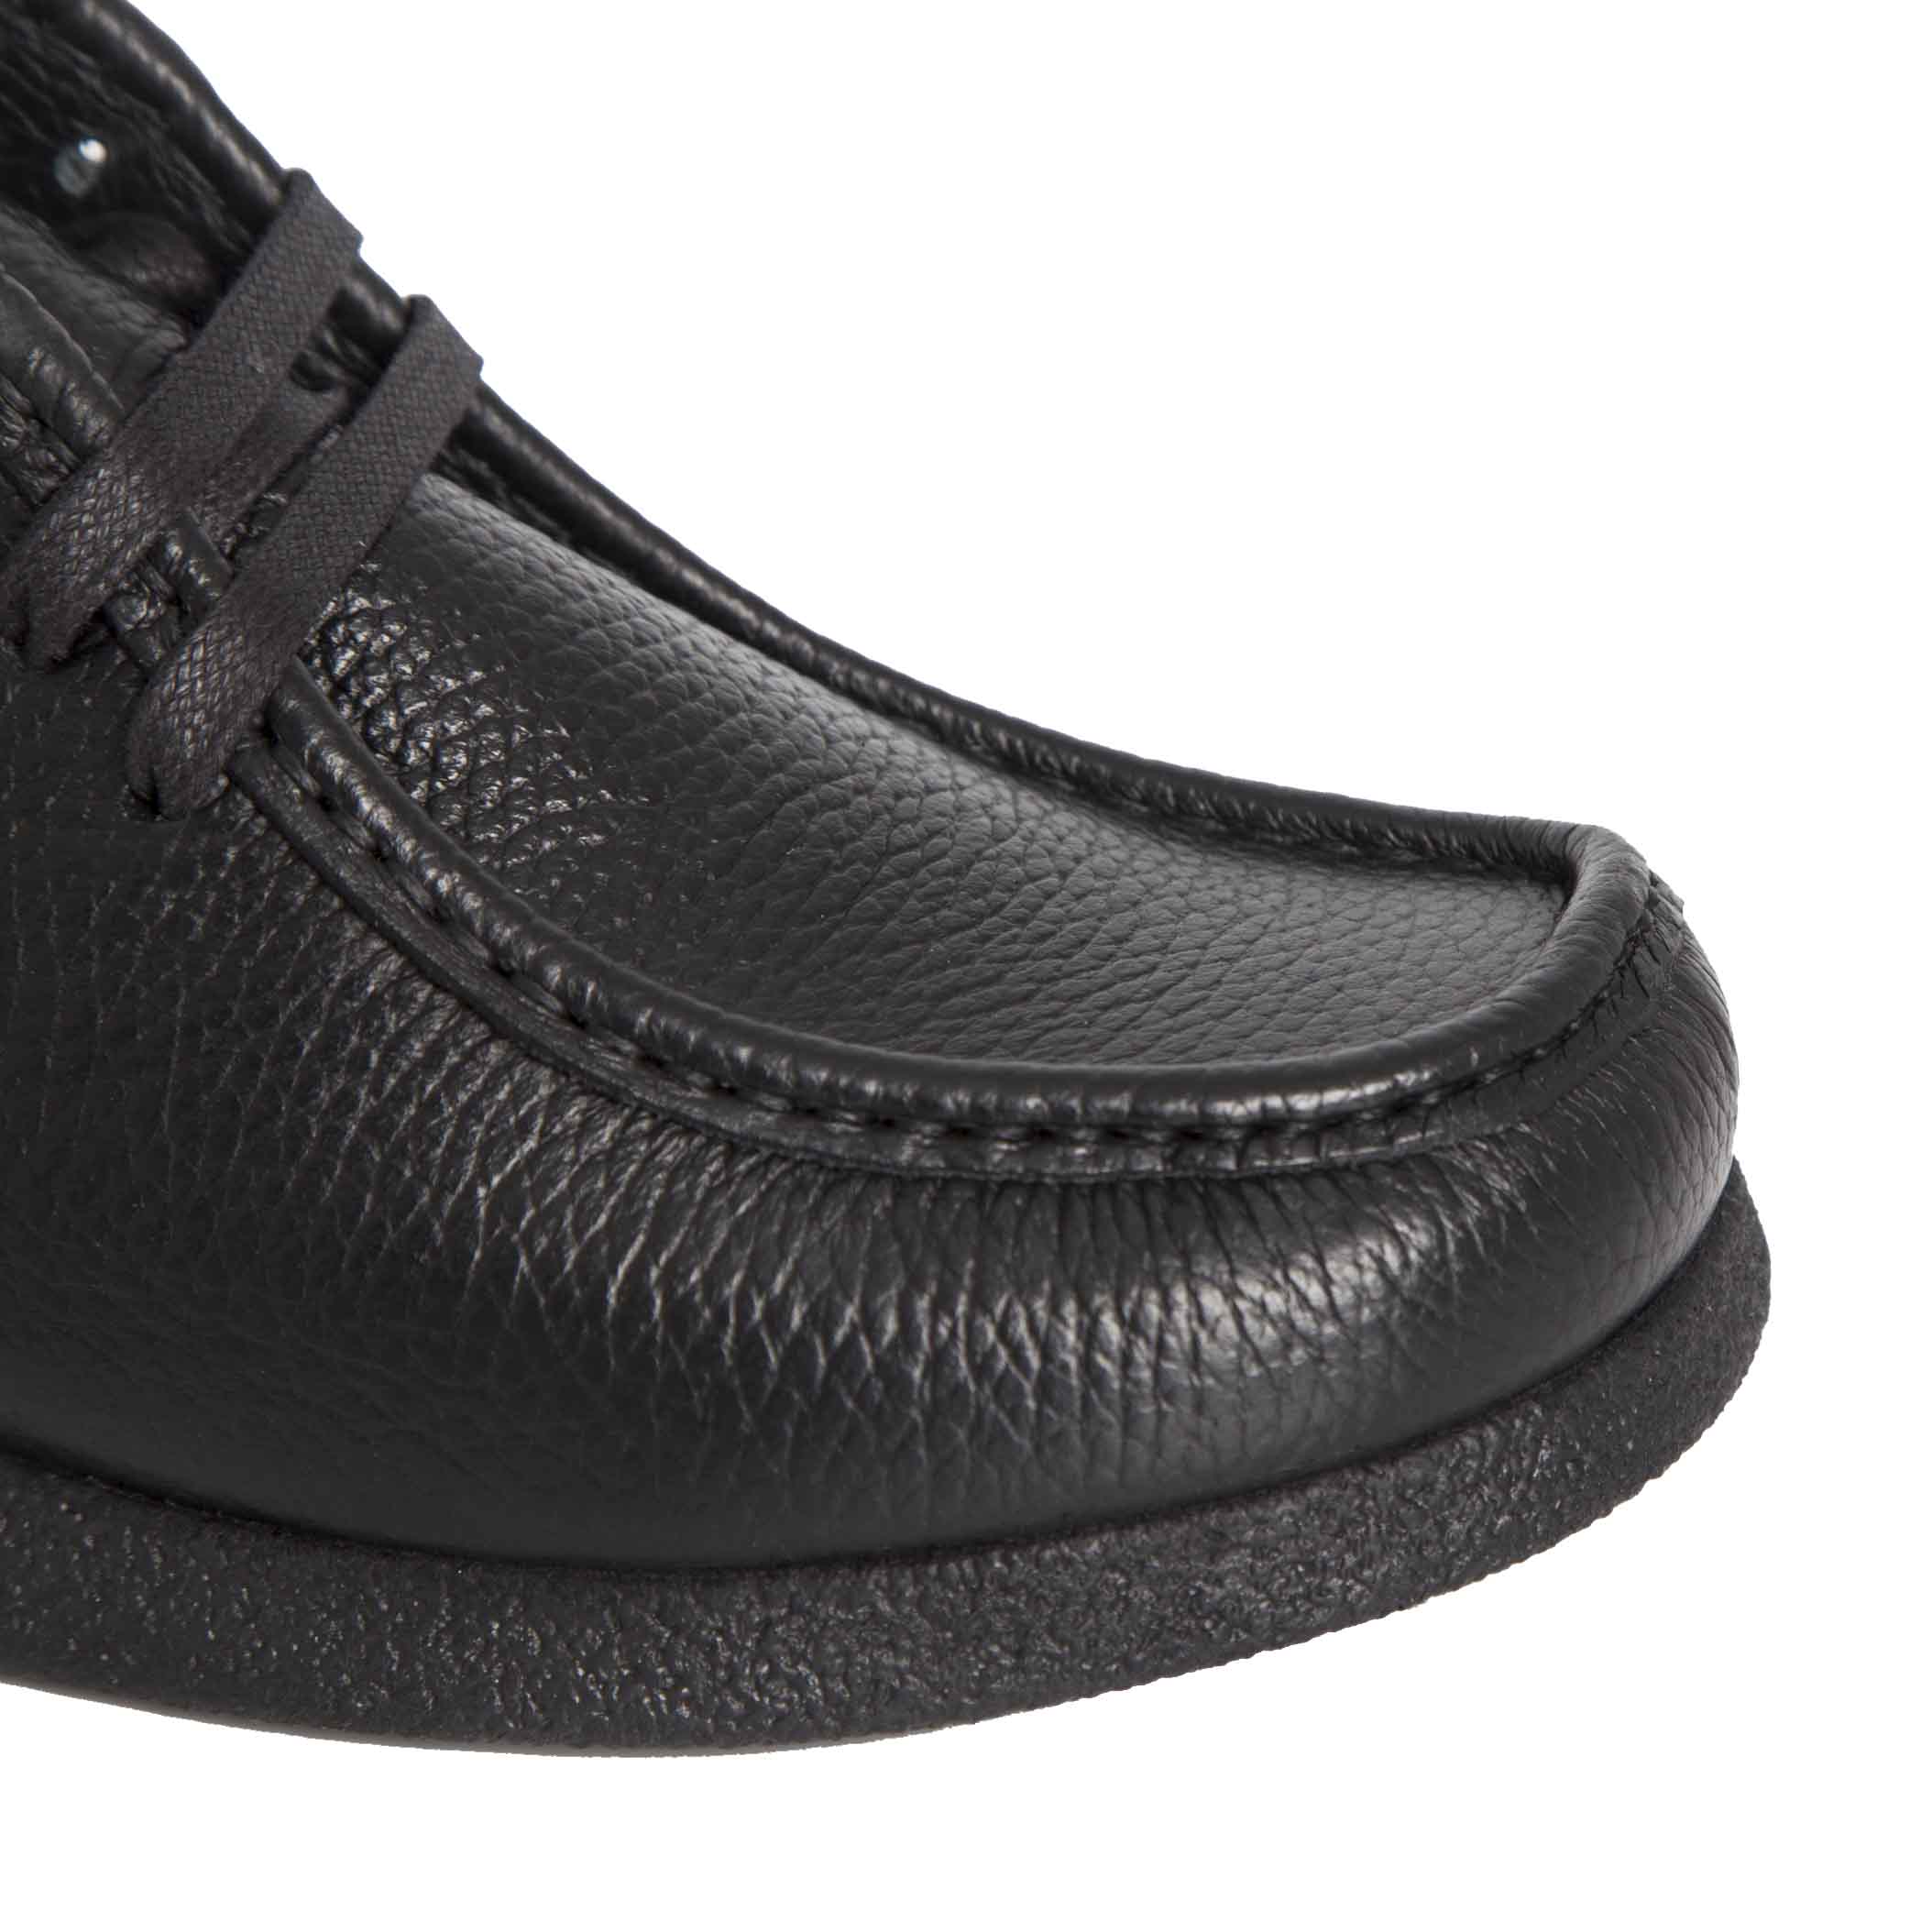 Poluduboka cipela Sebago u crnoj koži